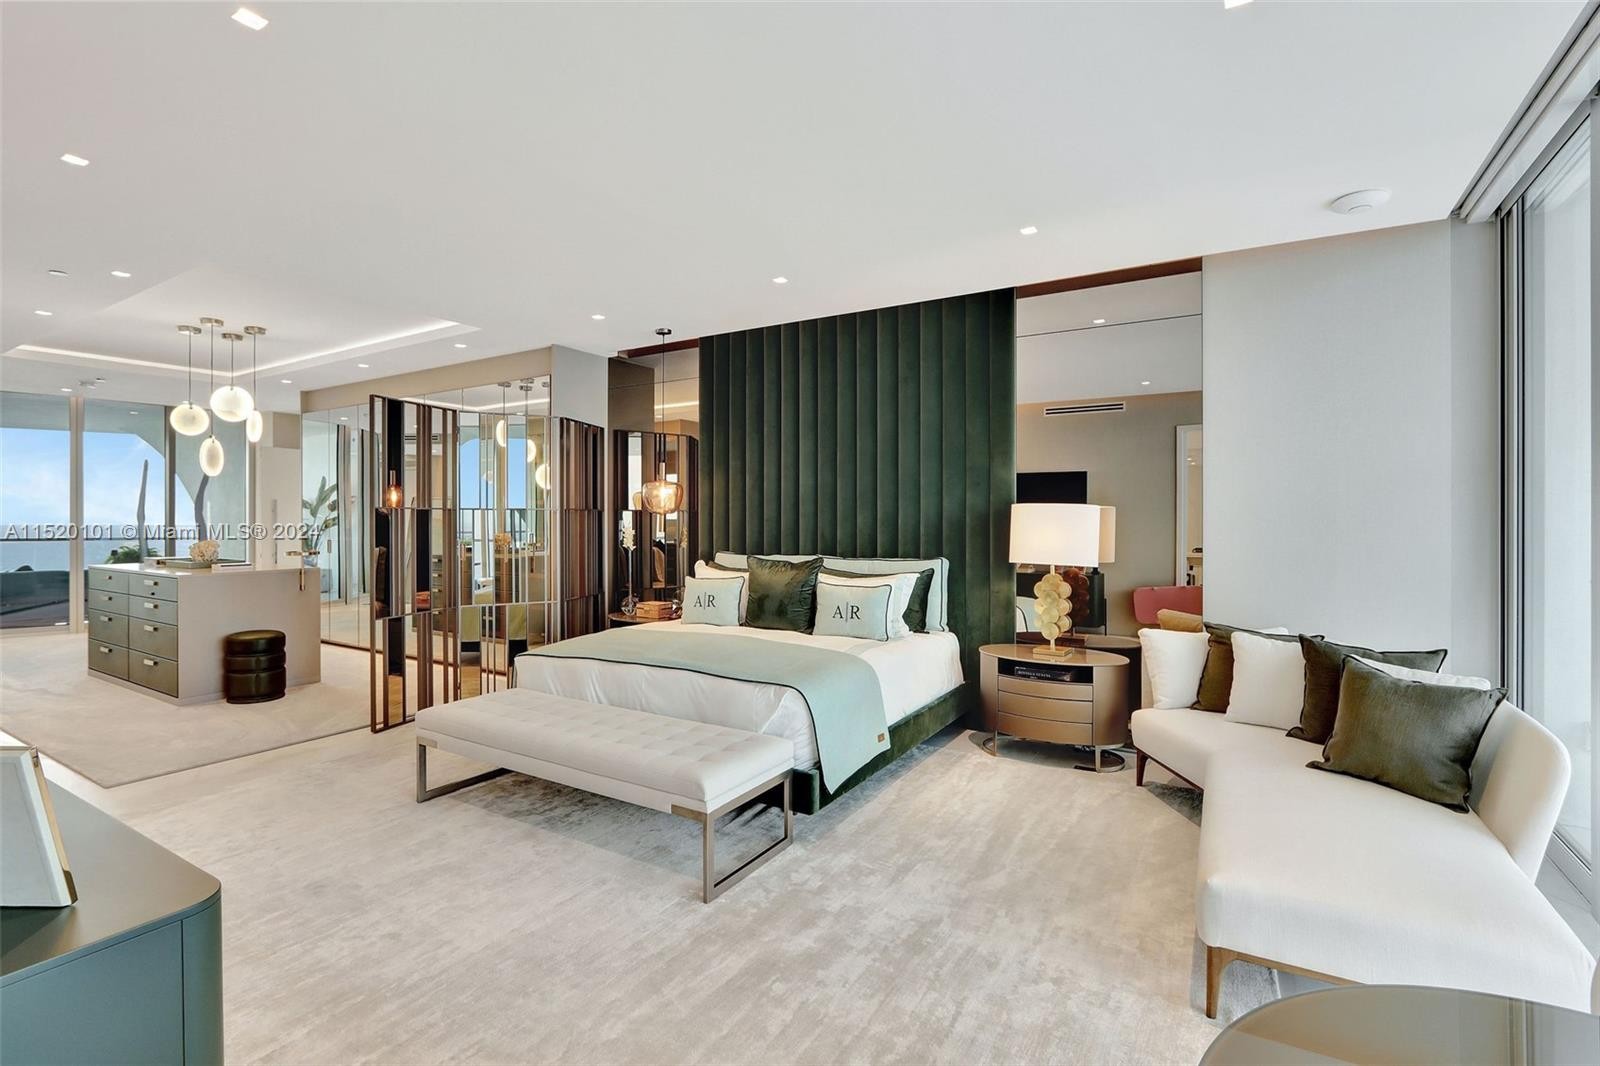 Apartamento luxuoso de Ana Paula Siebert e Roberto Justus em Miami está à venda — Foto: Divulgação CondoBlackBook